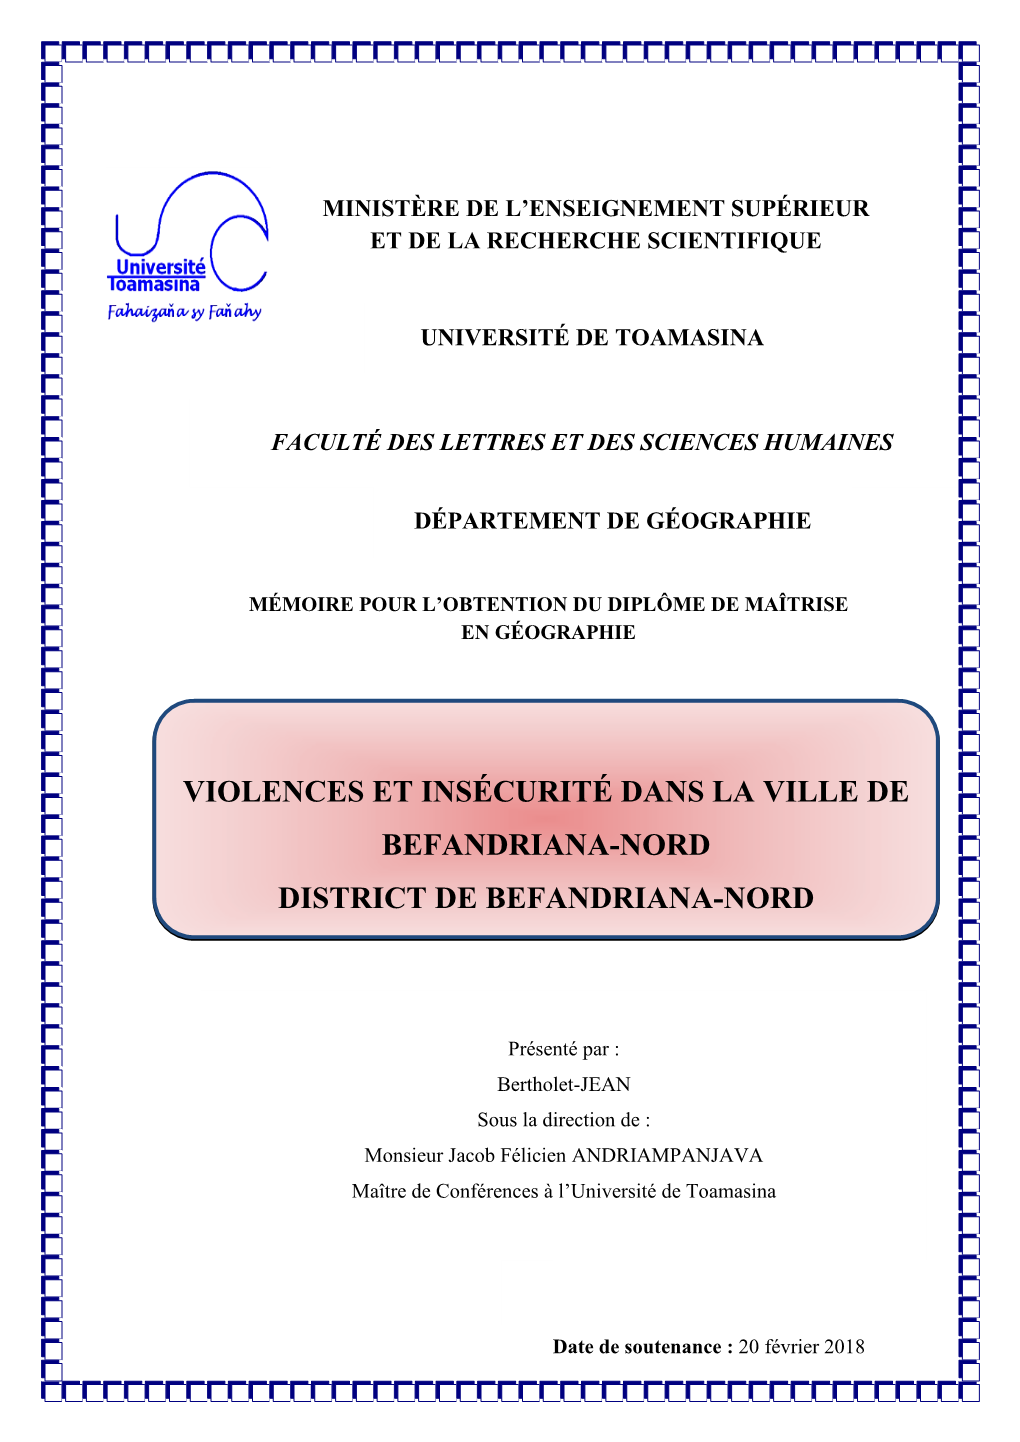 Violences Et Insécurité Dans La Ville De Befandriana-Nord District De Befandriana-Nord